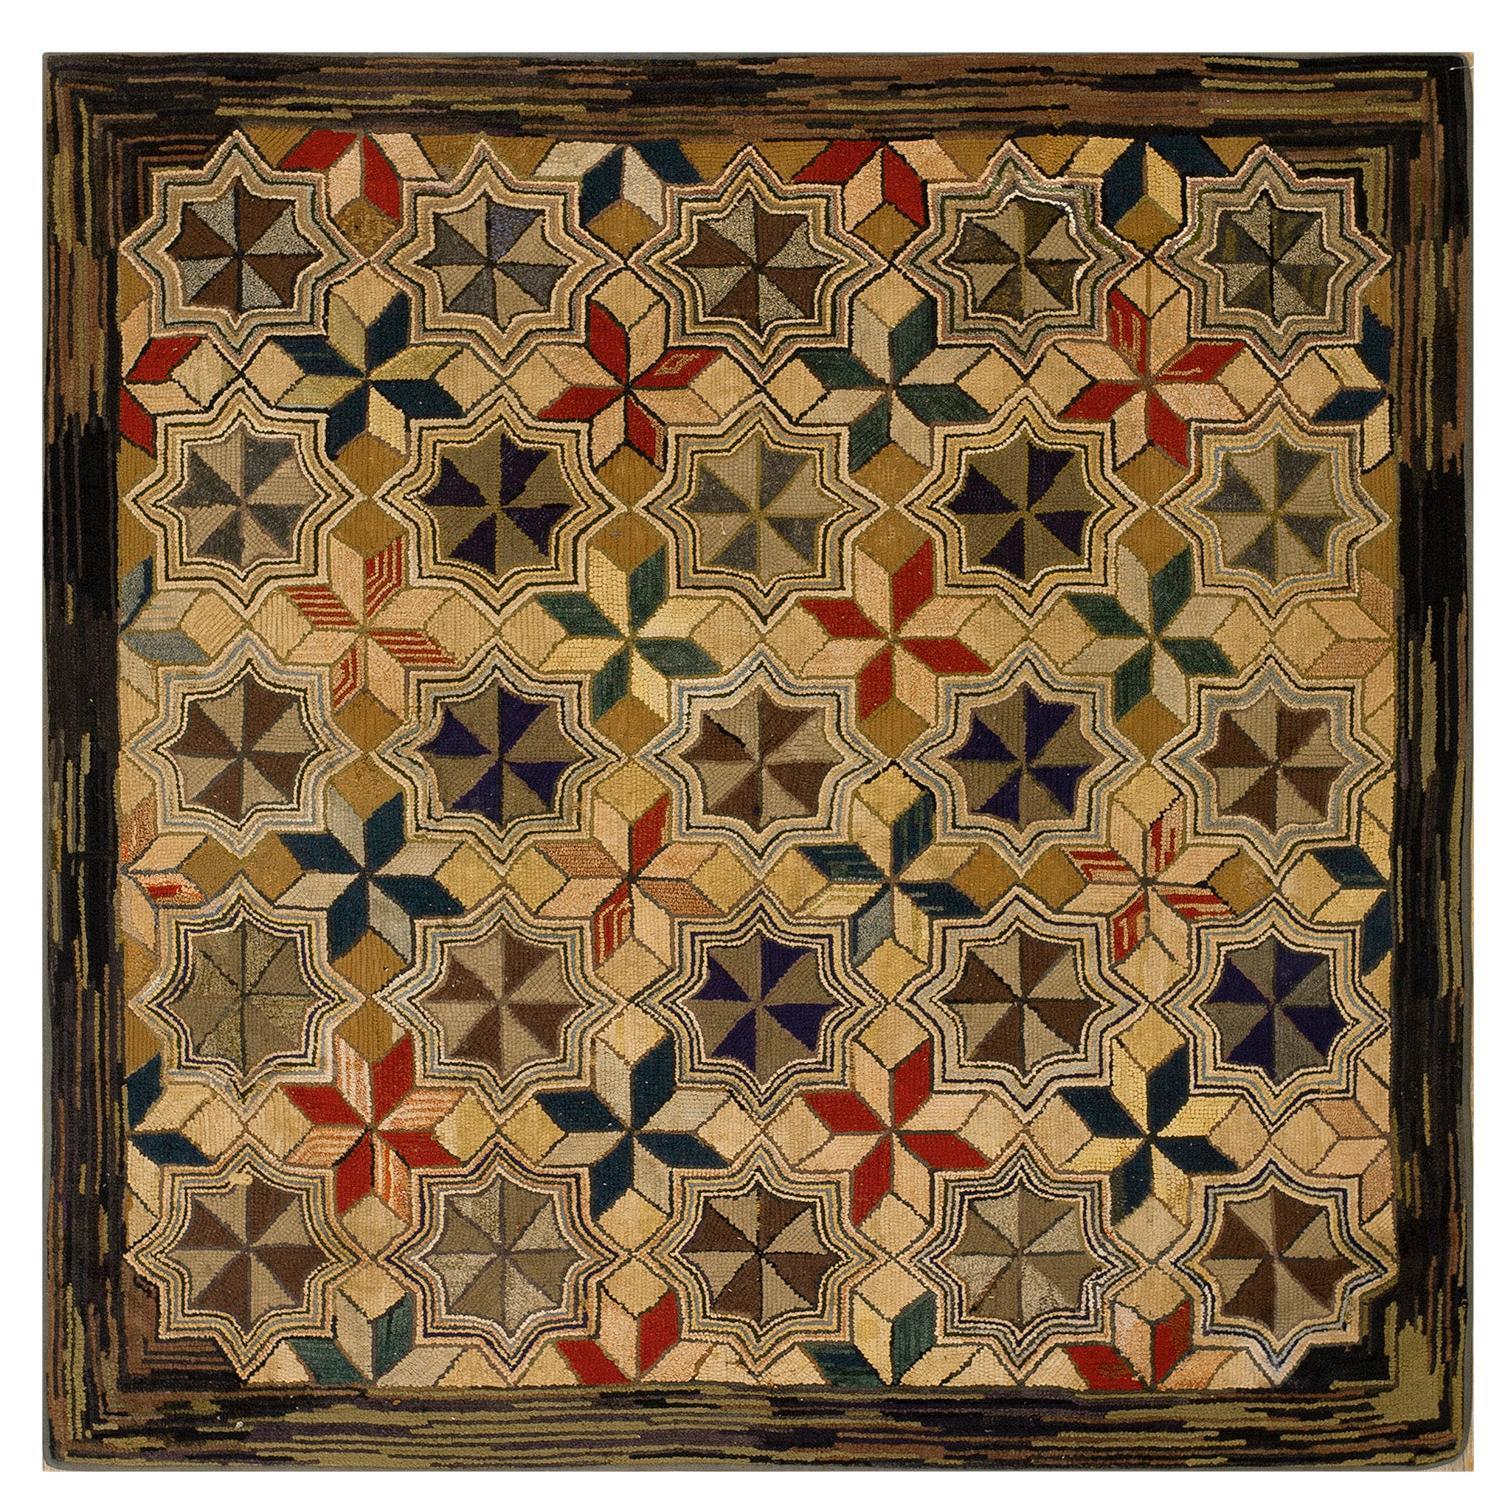 Amerikanischer Kapuzenteppich des frühen 20. Jahrhunderts ( 1,83 m x 1,83 m)  - 175 x 182 cm )